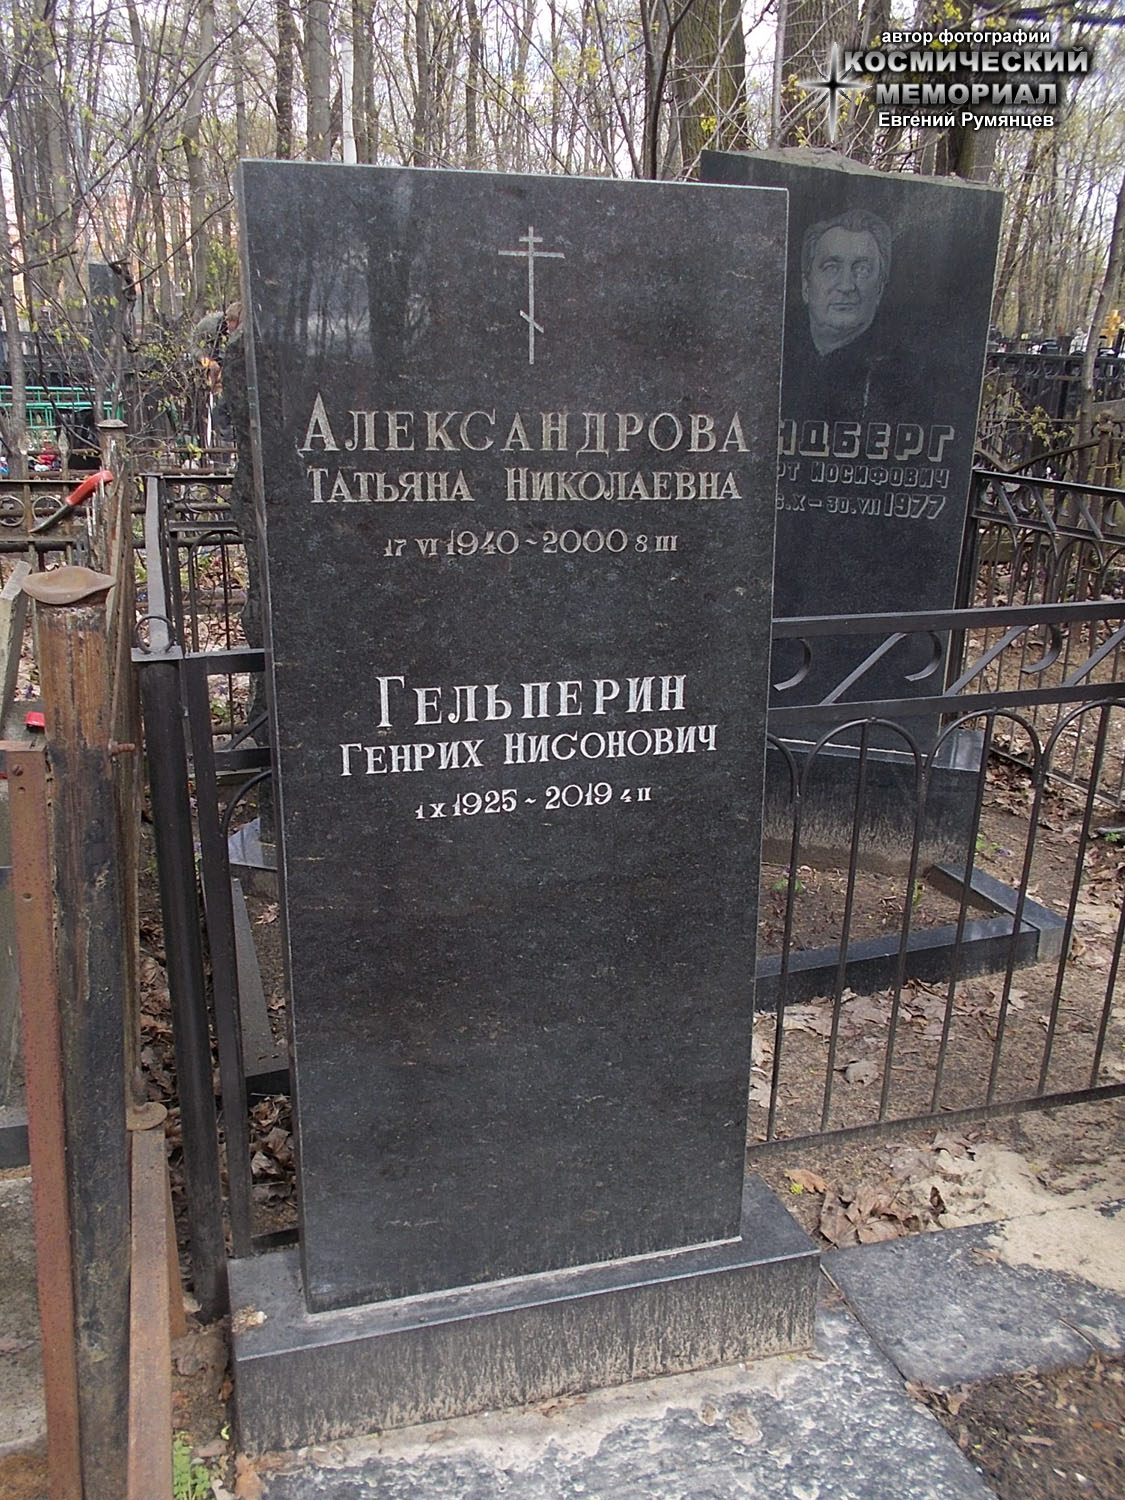 г. Москва, Введенское кладбище (уч. № 10). Надгробие на могилах Г.Н. Гельперина и его супруги (апрель 2021 года)